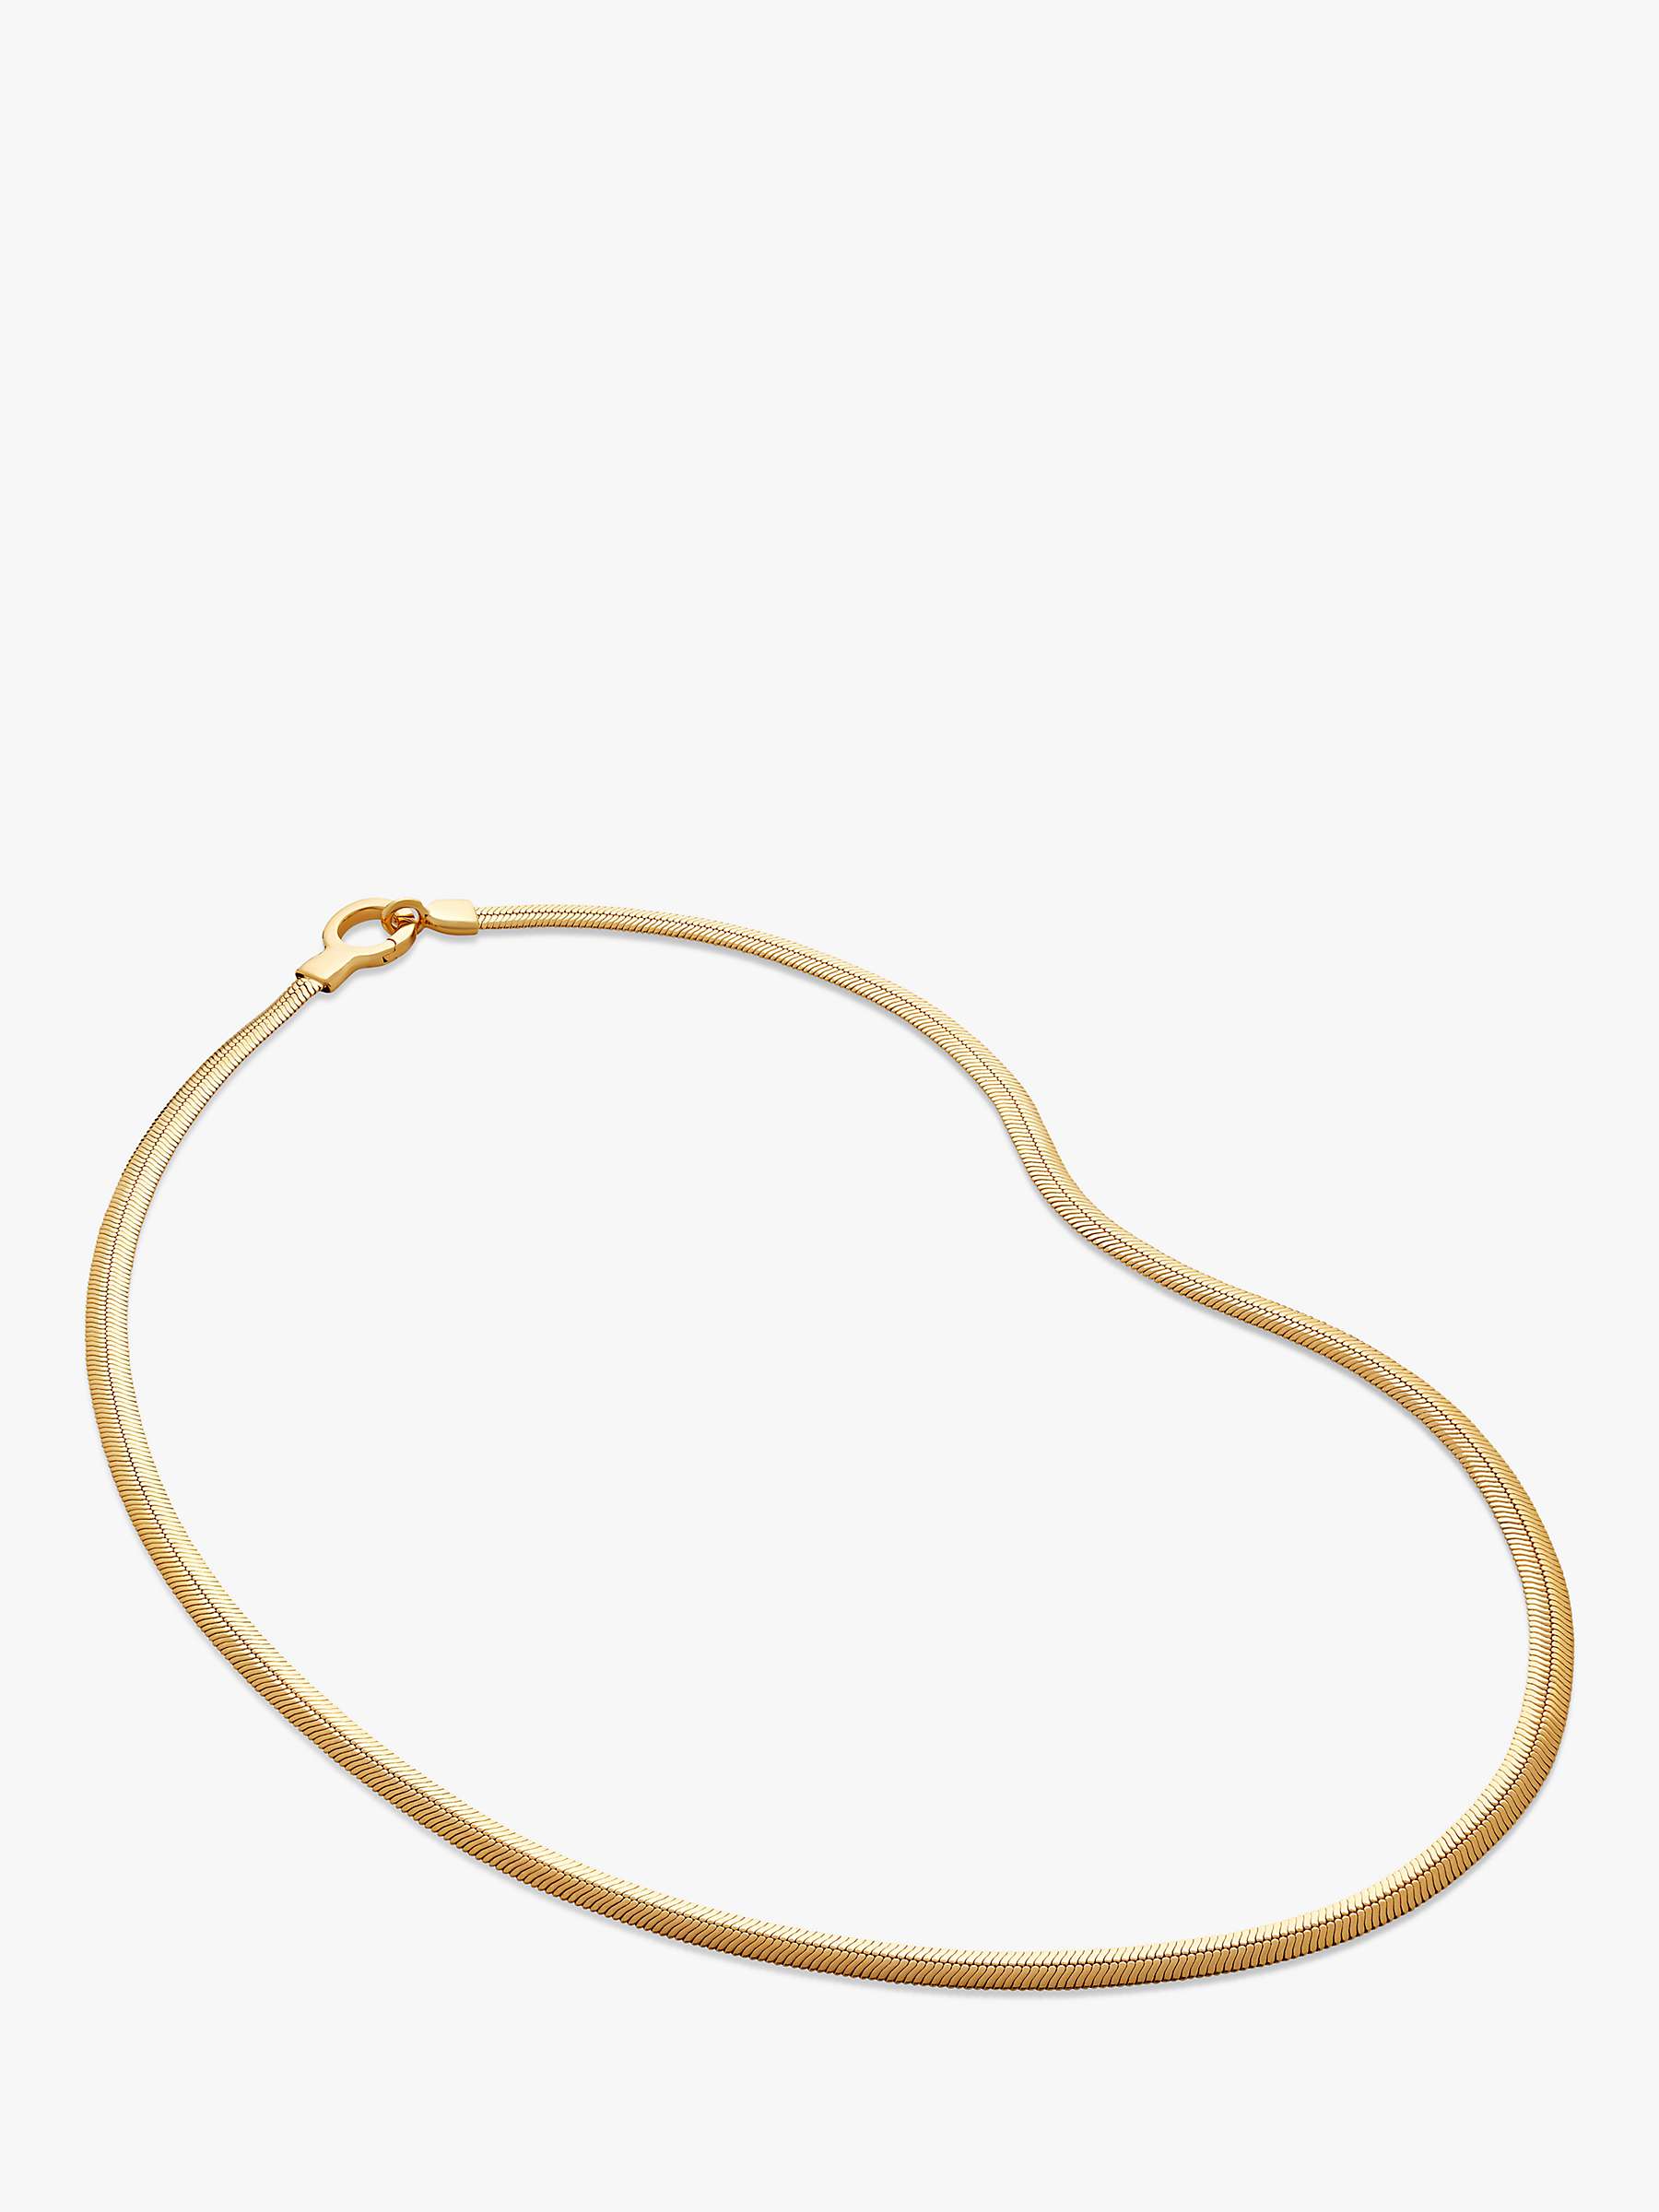 Buy Monica Vinader Wide Snake Chain Necklace, Gold Online at johnlewis.com